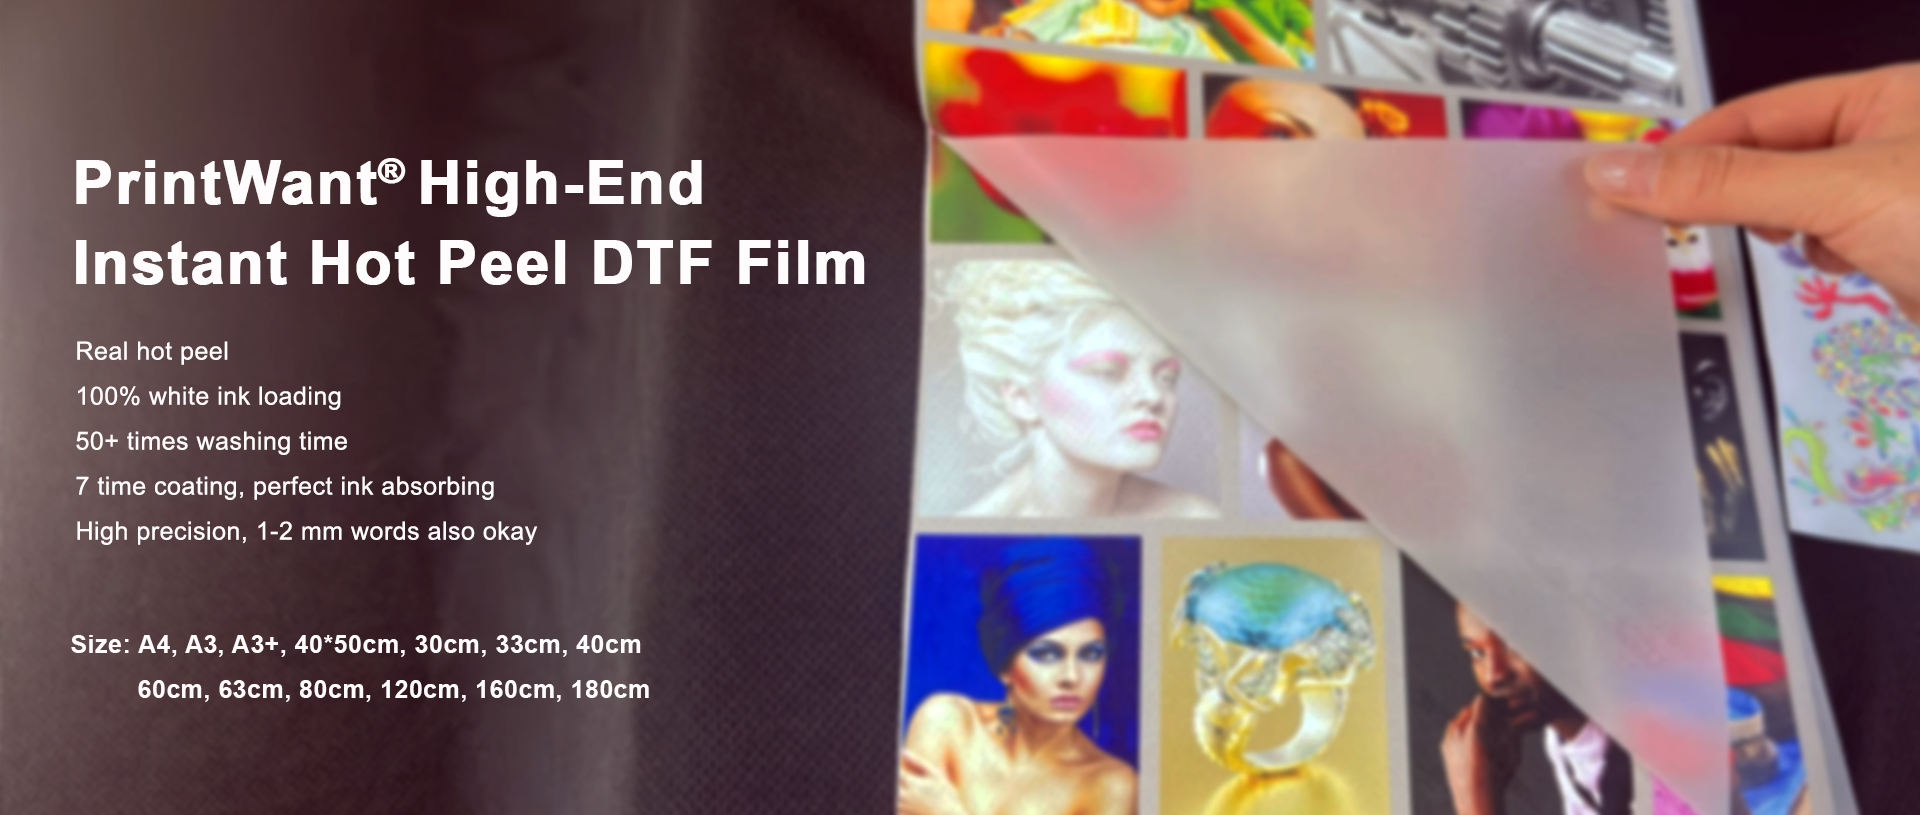 Der DTF Pet Film von PrintWant: das Branchenmodell für perfekte Instant Hot Peel-Effekte